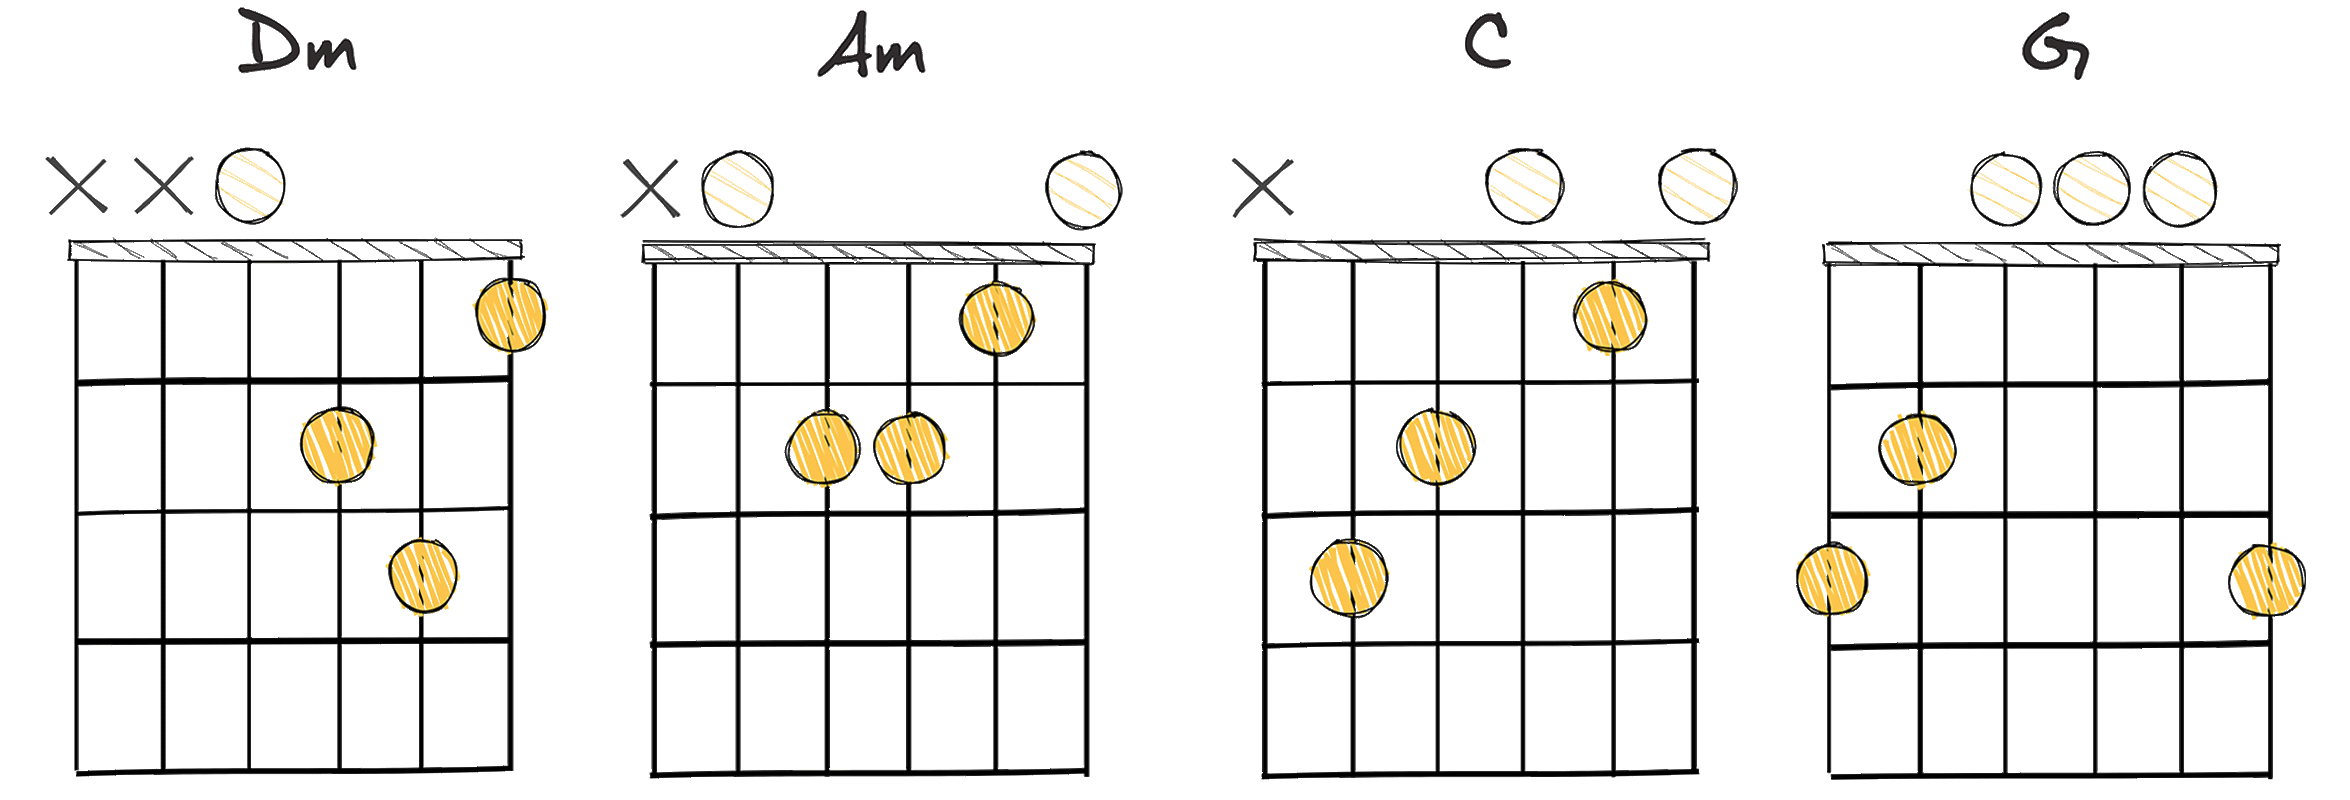 ii - vi - I - V (2-6-1-5) chords diagram